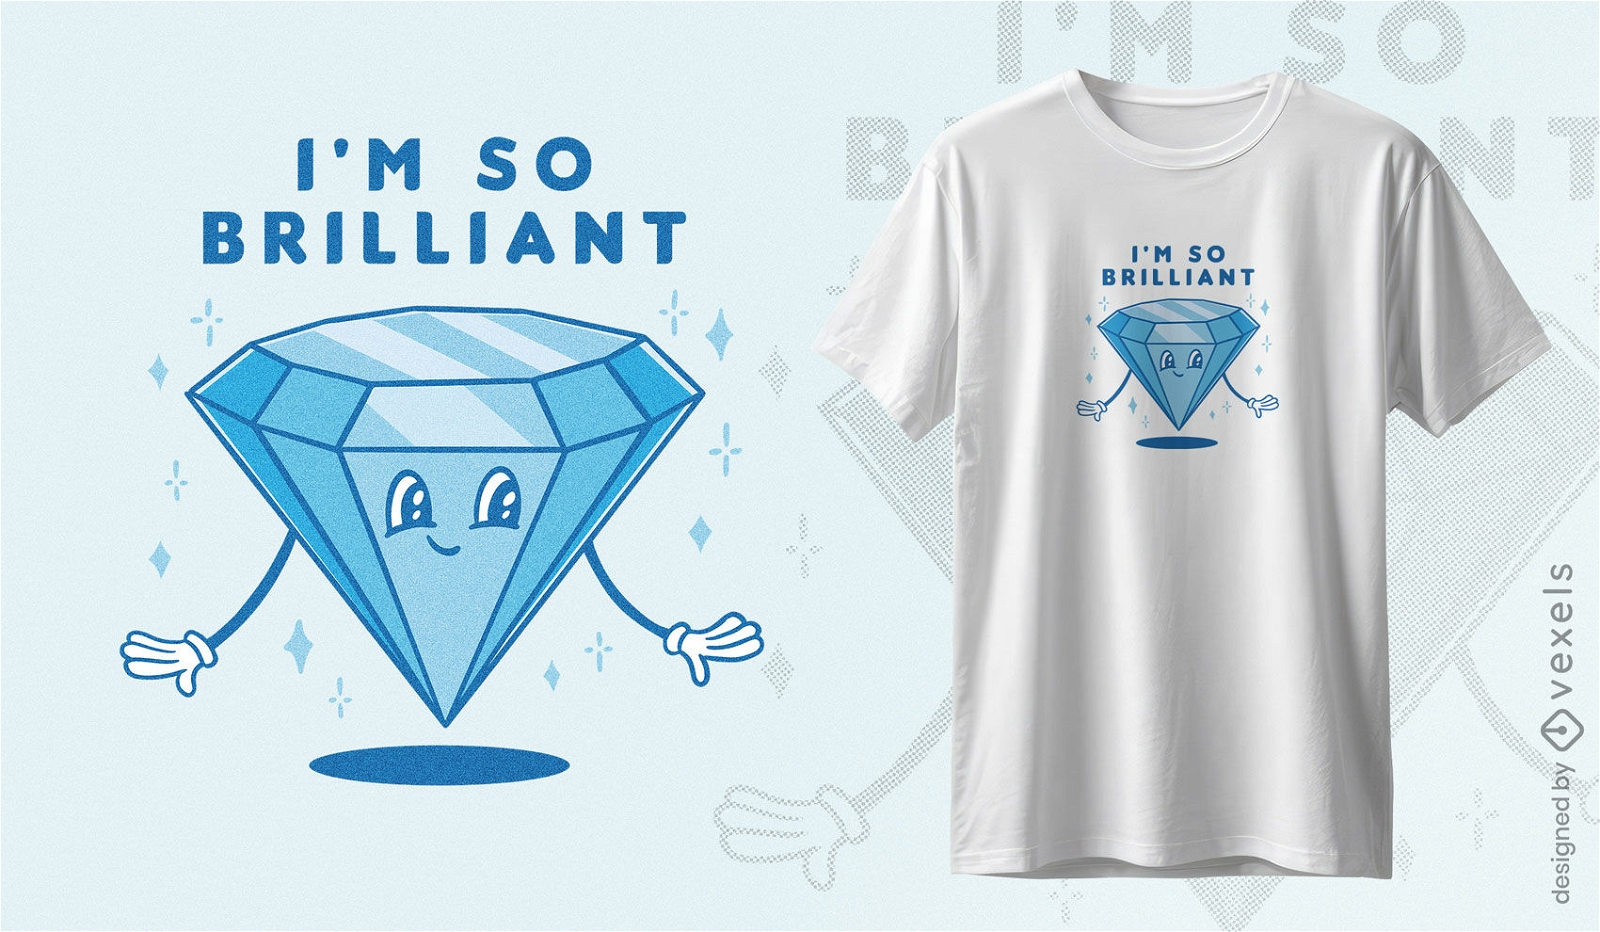 Dise?o de camiseta de diamante brillante.